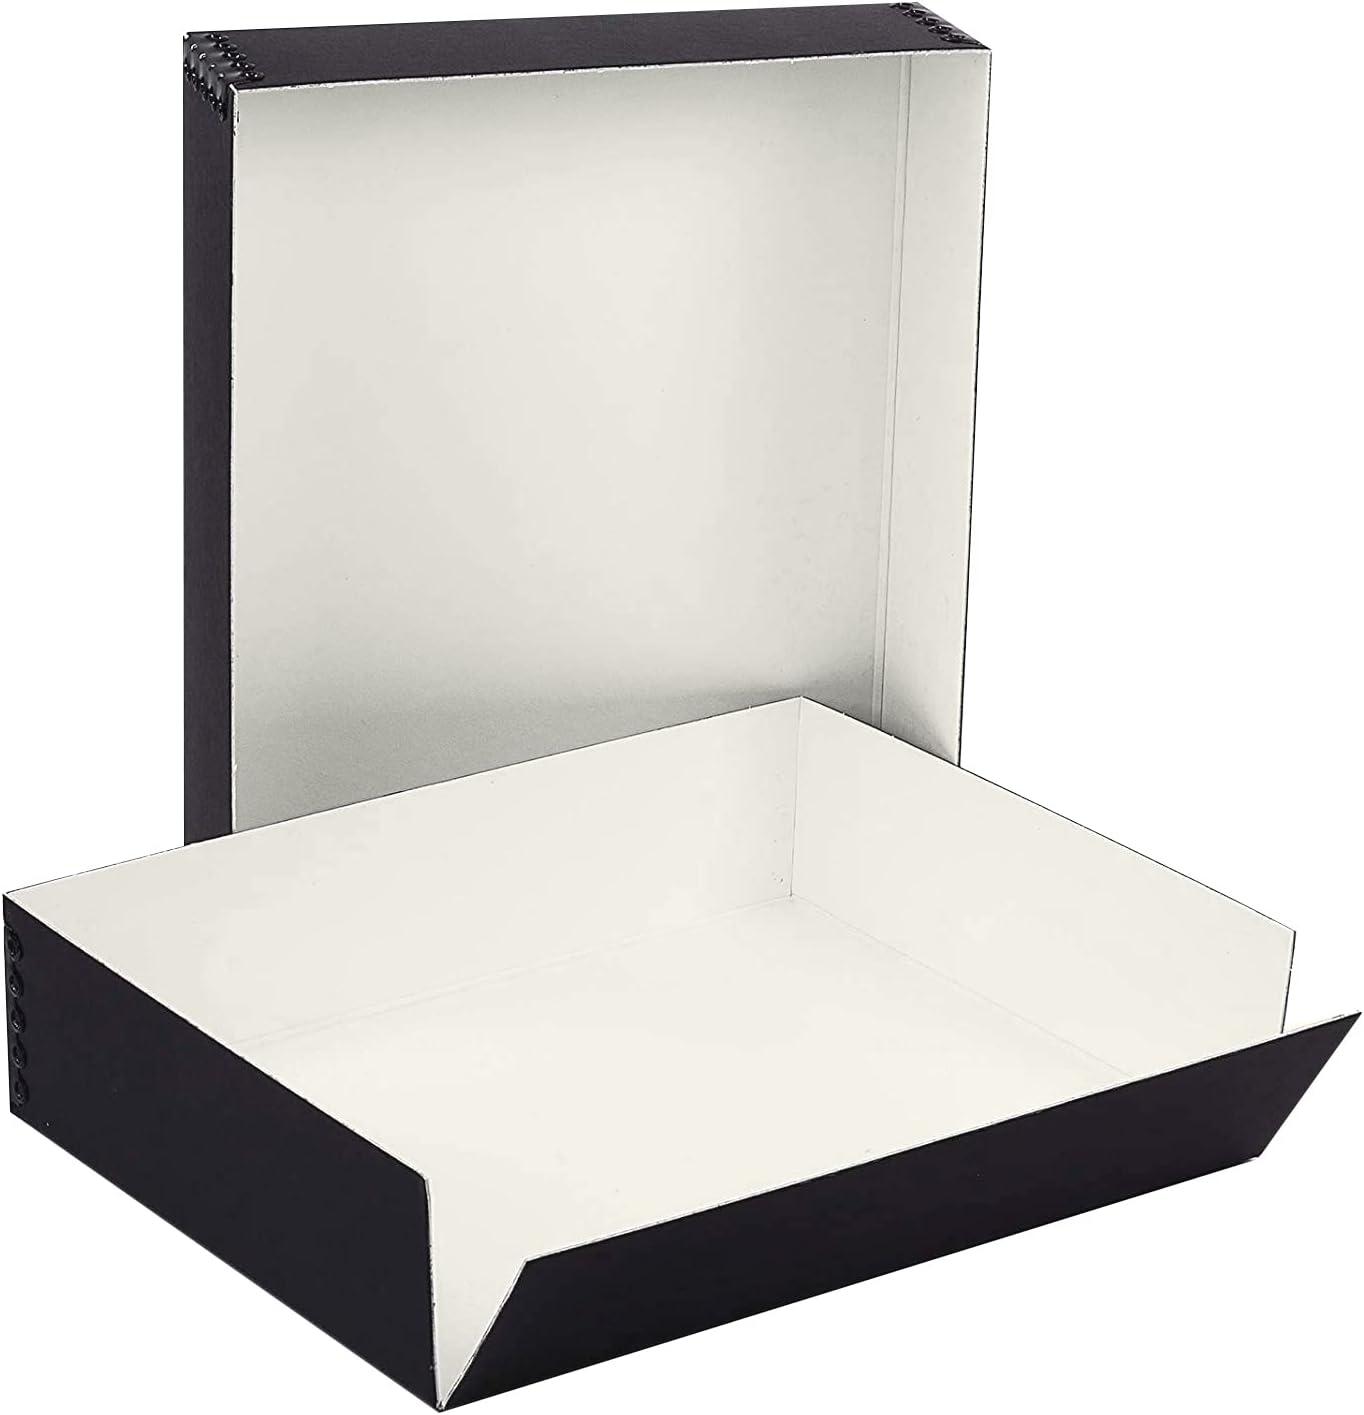 Lineco 9x12 Black Museum Archival Storage Box Drop Front Design